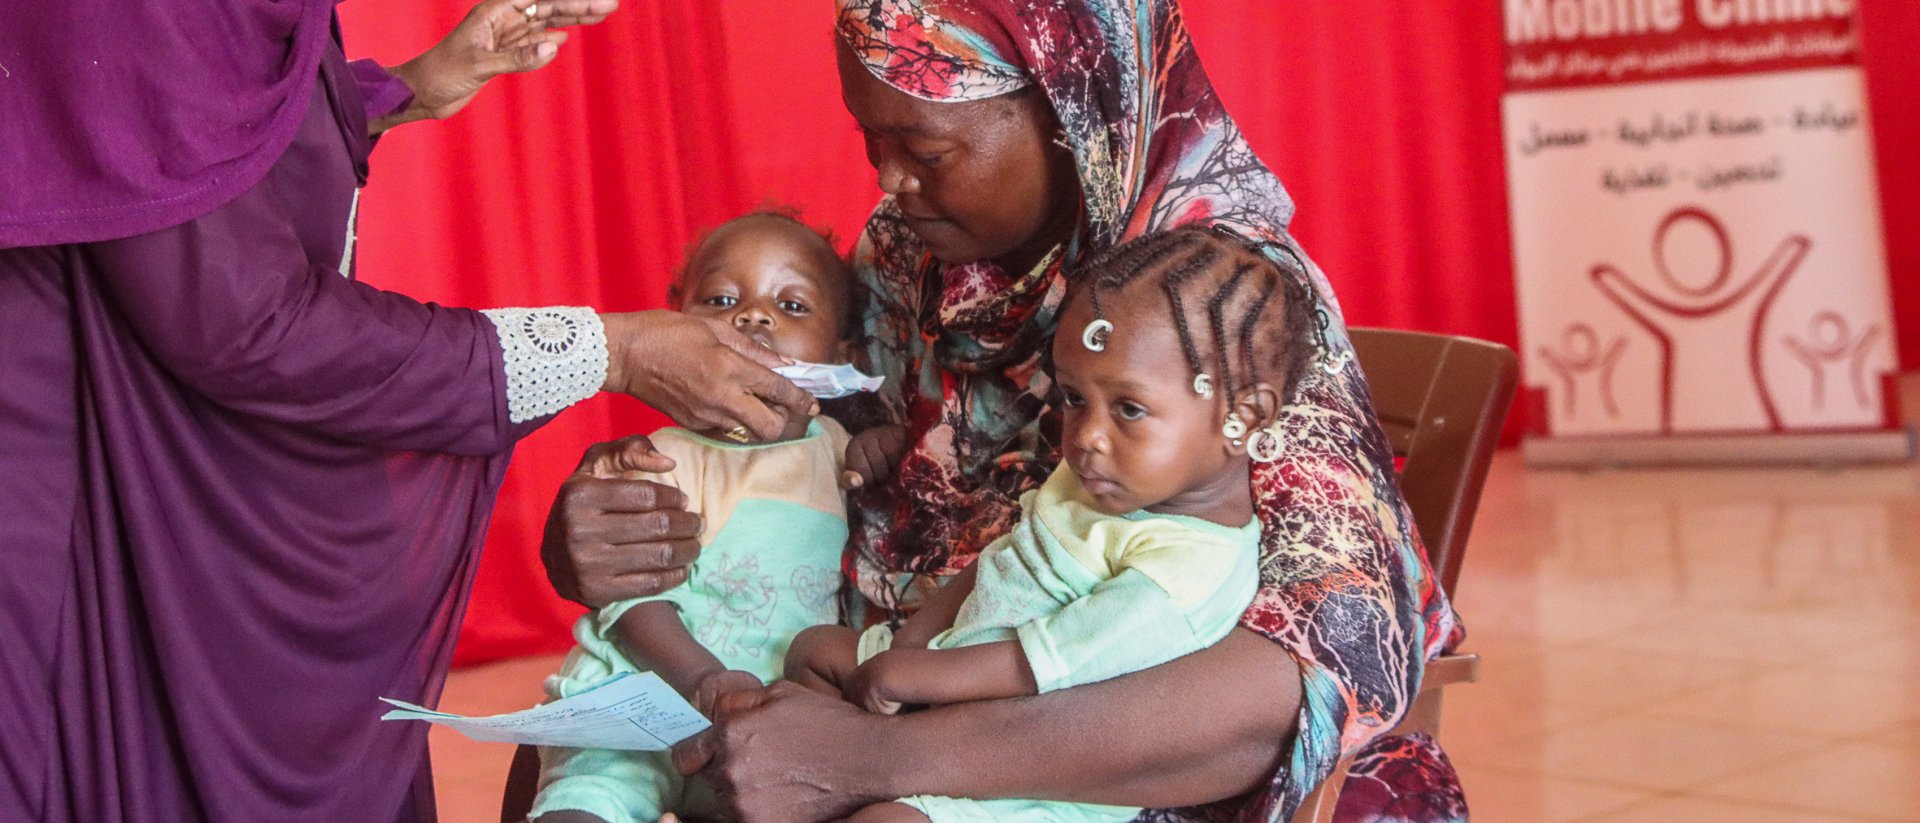 Súdan clínica ayuda desnutrición Save the Children